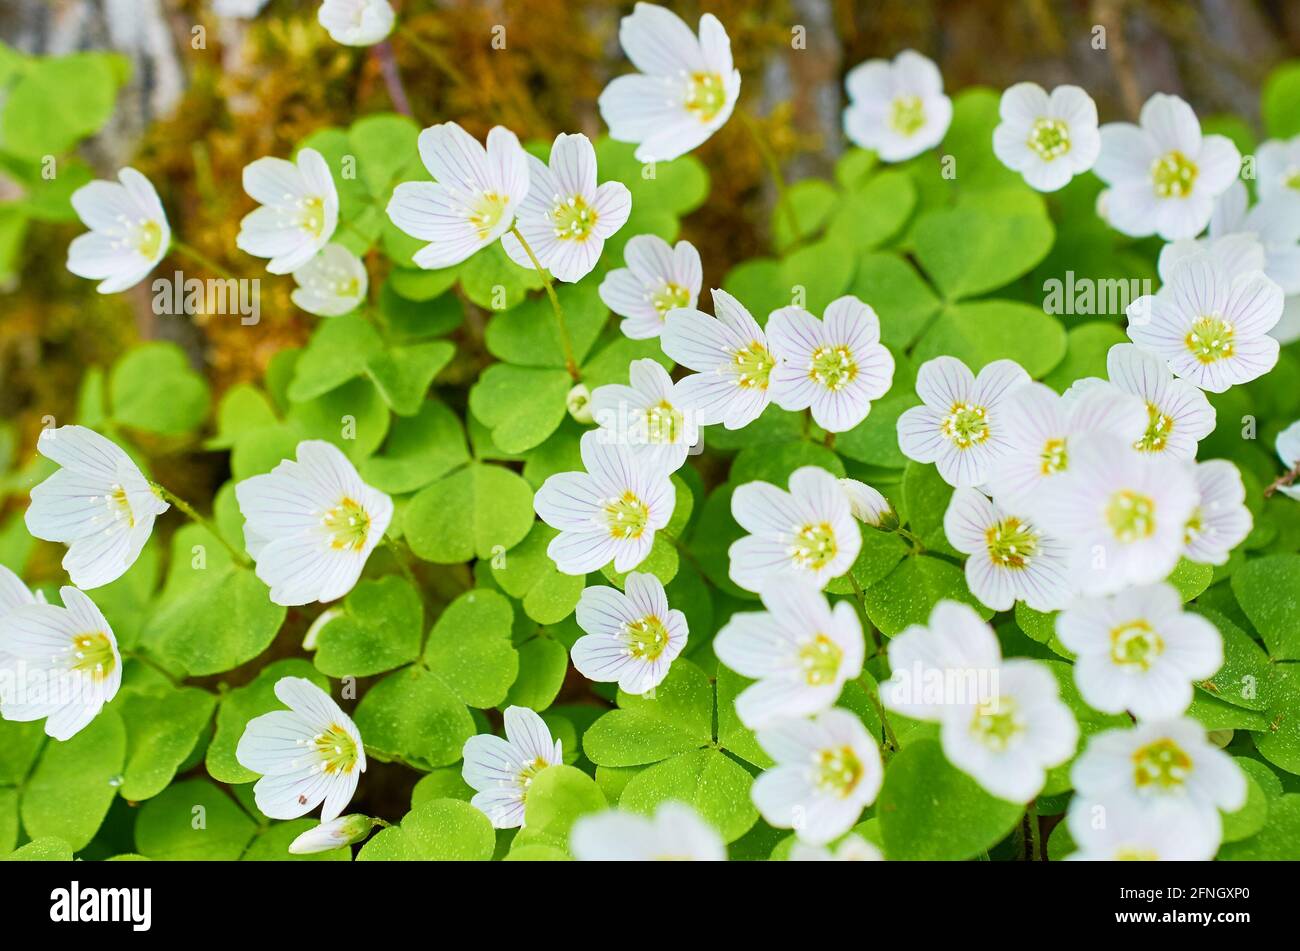 Hintergrund von grünen Blättern und weißen Blüten der Oxalis Acetosella Stockfoto